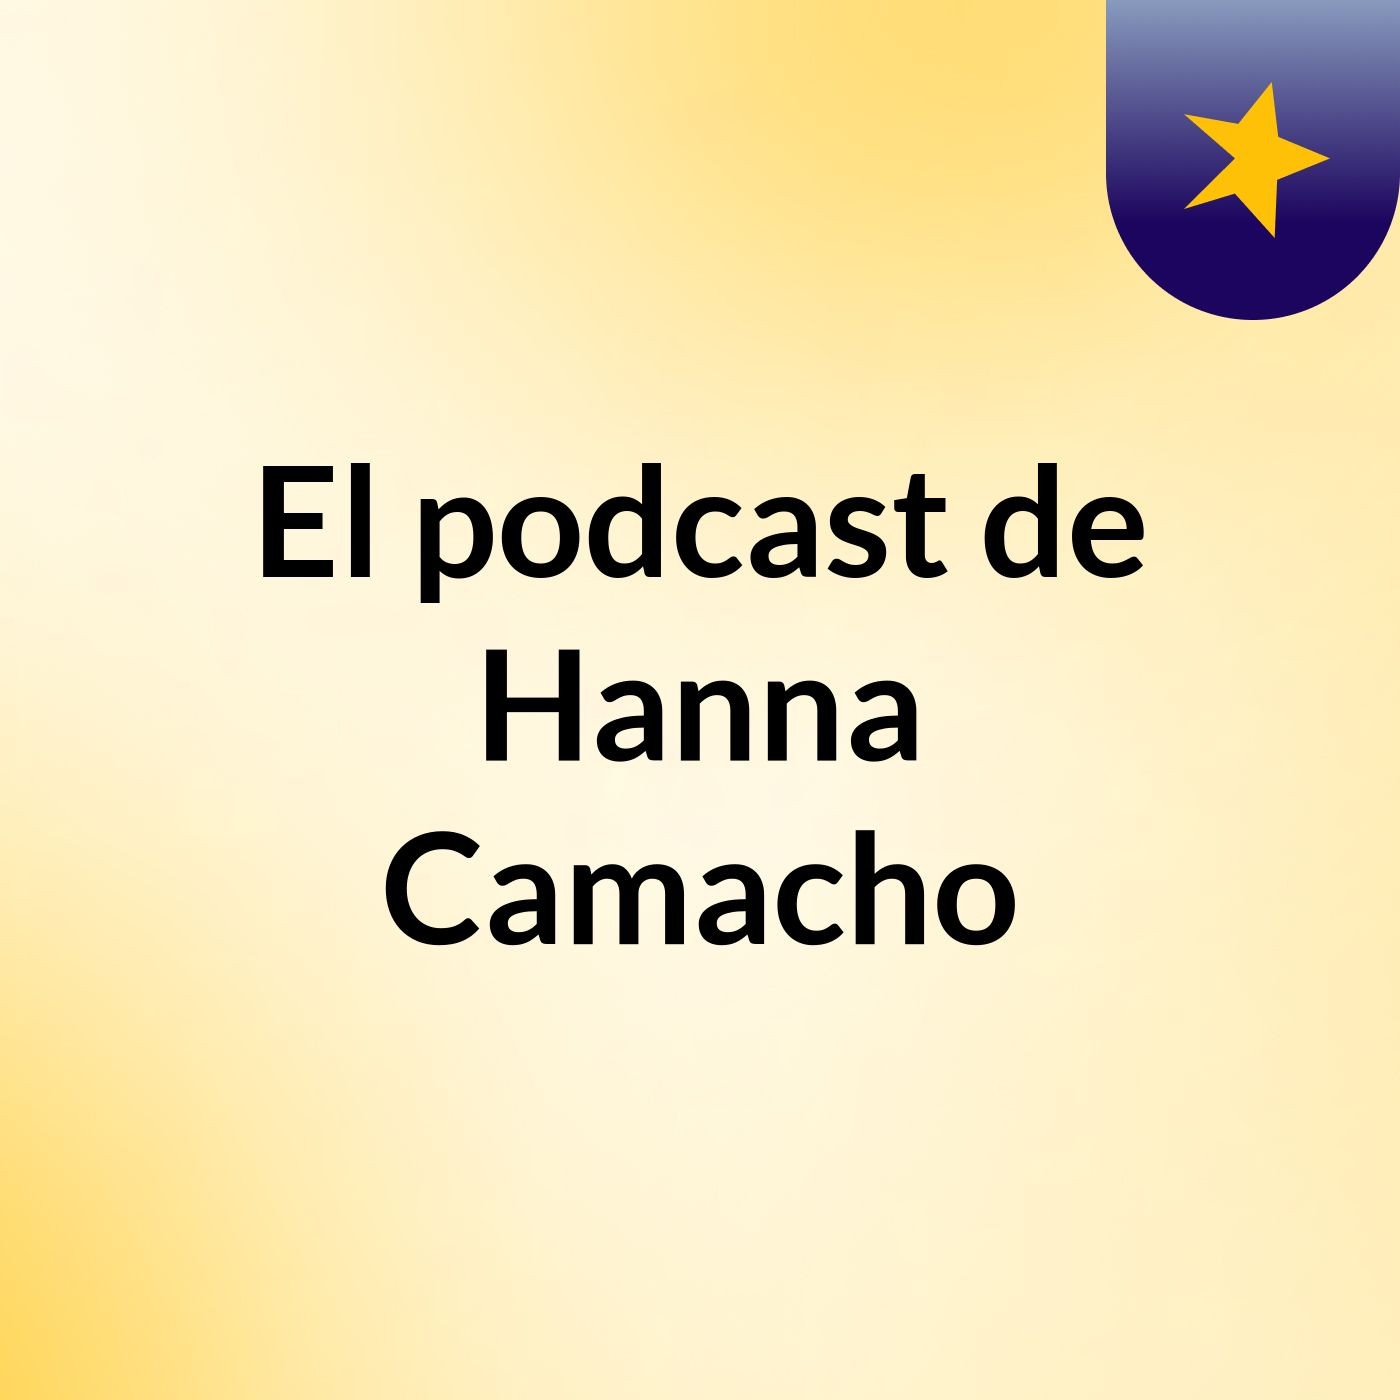 El podcast de Hanna Camacho